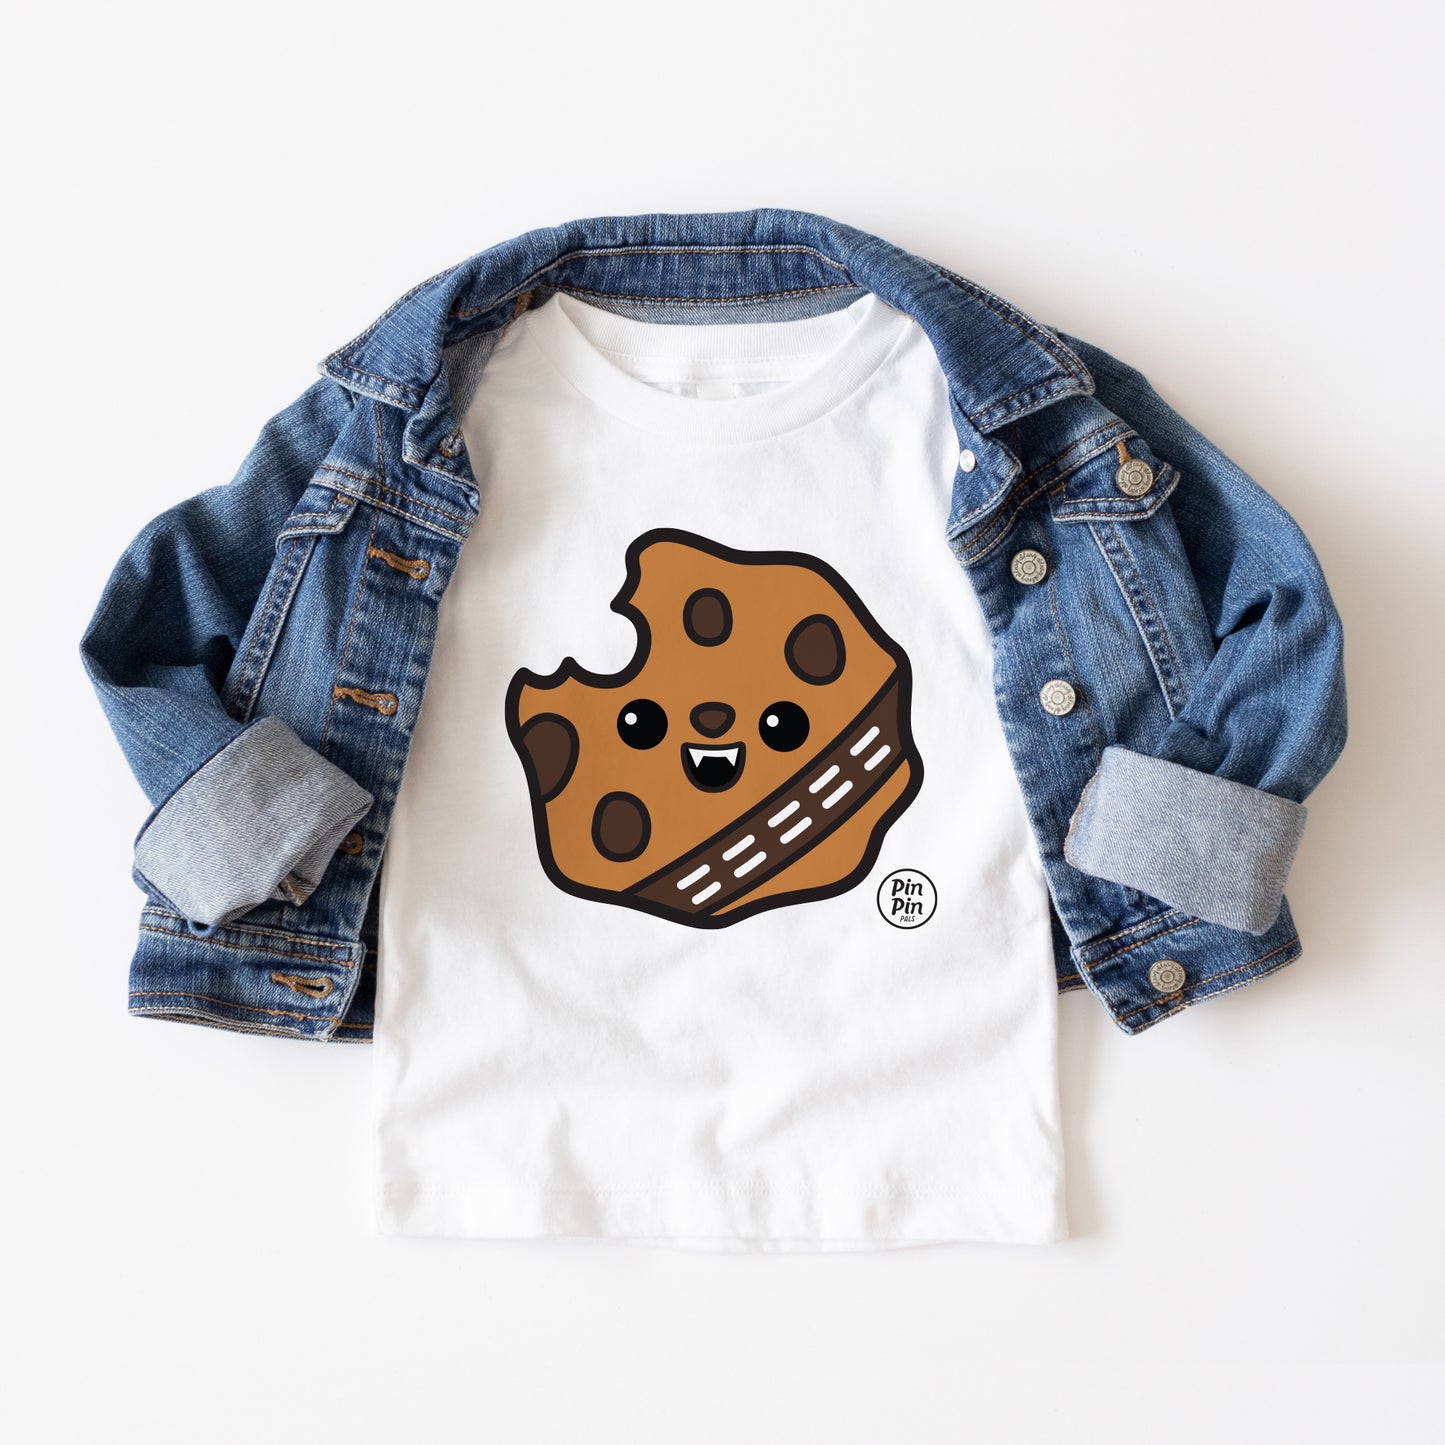 Wookie Cookie - Toddler & Youth Tees